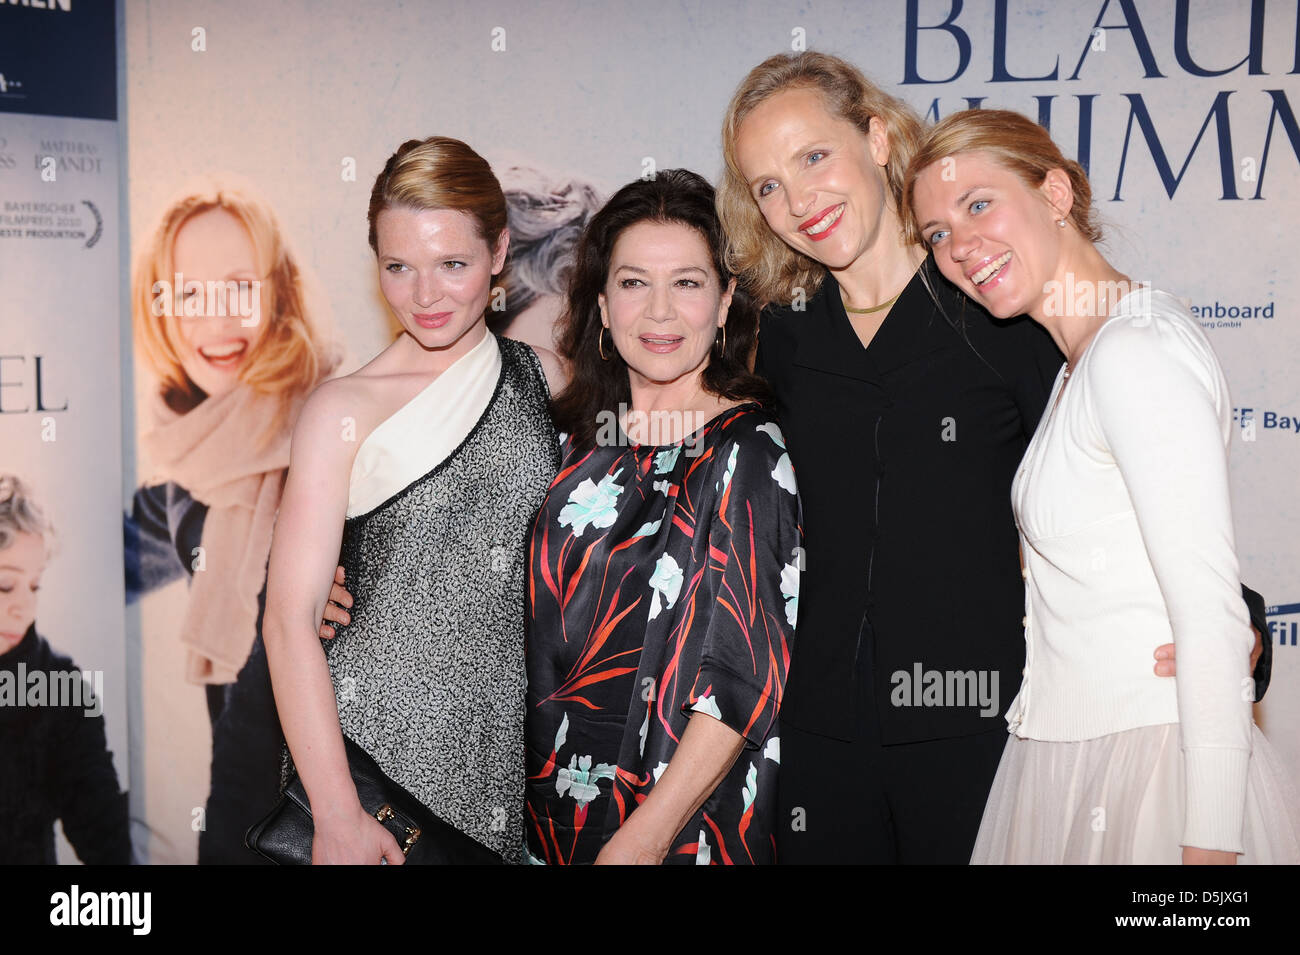 Karoline Herfurth, Hannelore Elsner, Juliane Koehler und Juta Vanaga an der Berlin-premiere von "Das Blaue Vom Himmel" im Astor Stockfoto